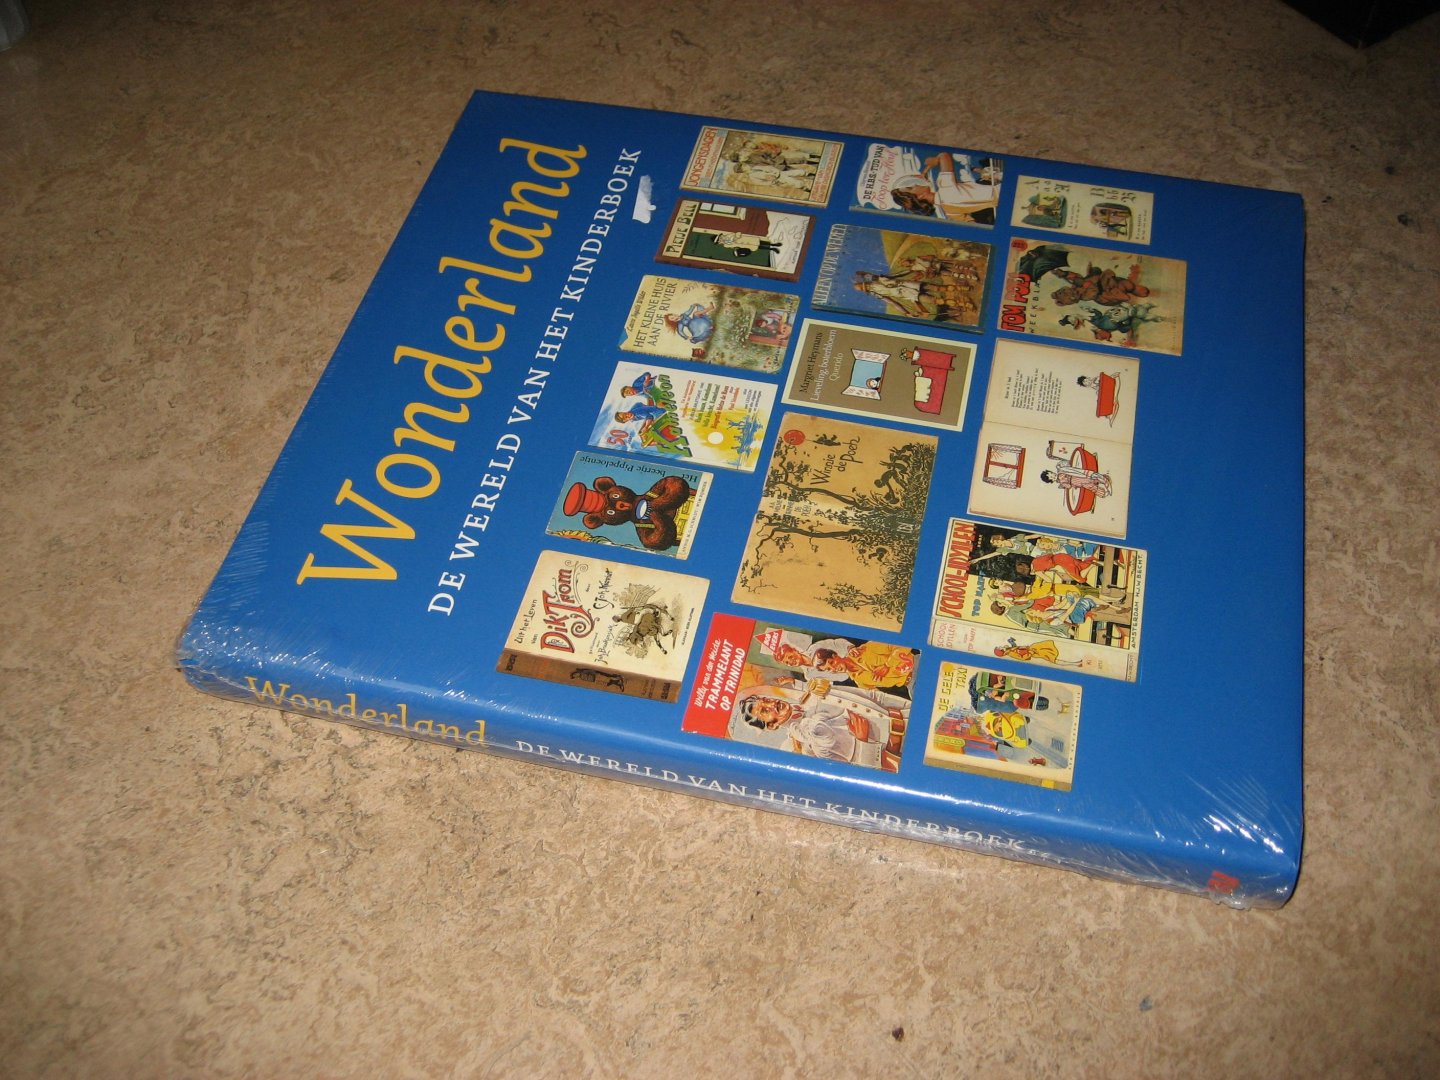 Delft, Marieke van / e.a. (redactie) - Wonderland. De wereld van het kinderboek